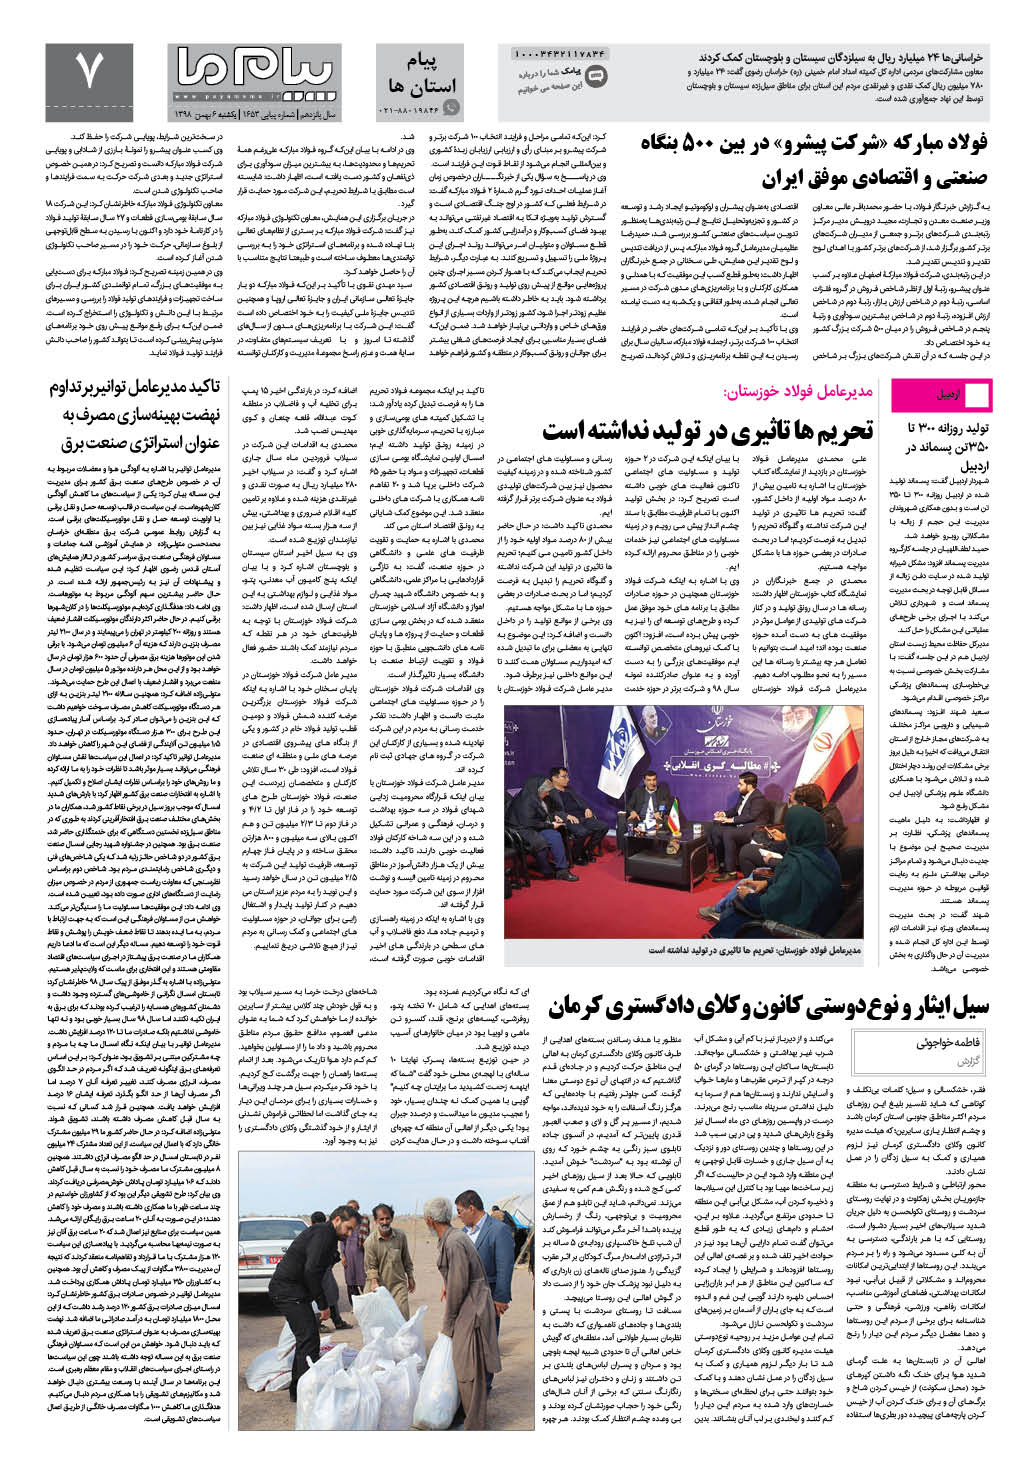 صفحه پیام استان ها شماره 1653 روزنامه پیام ما